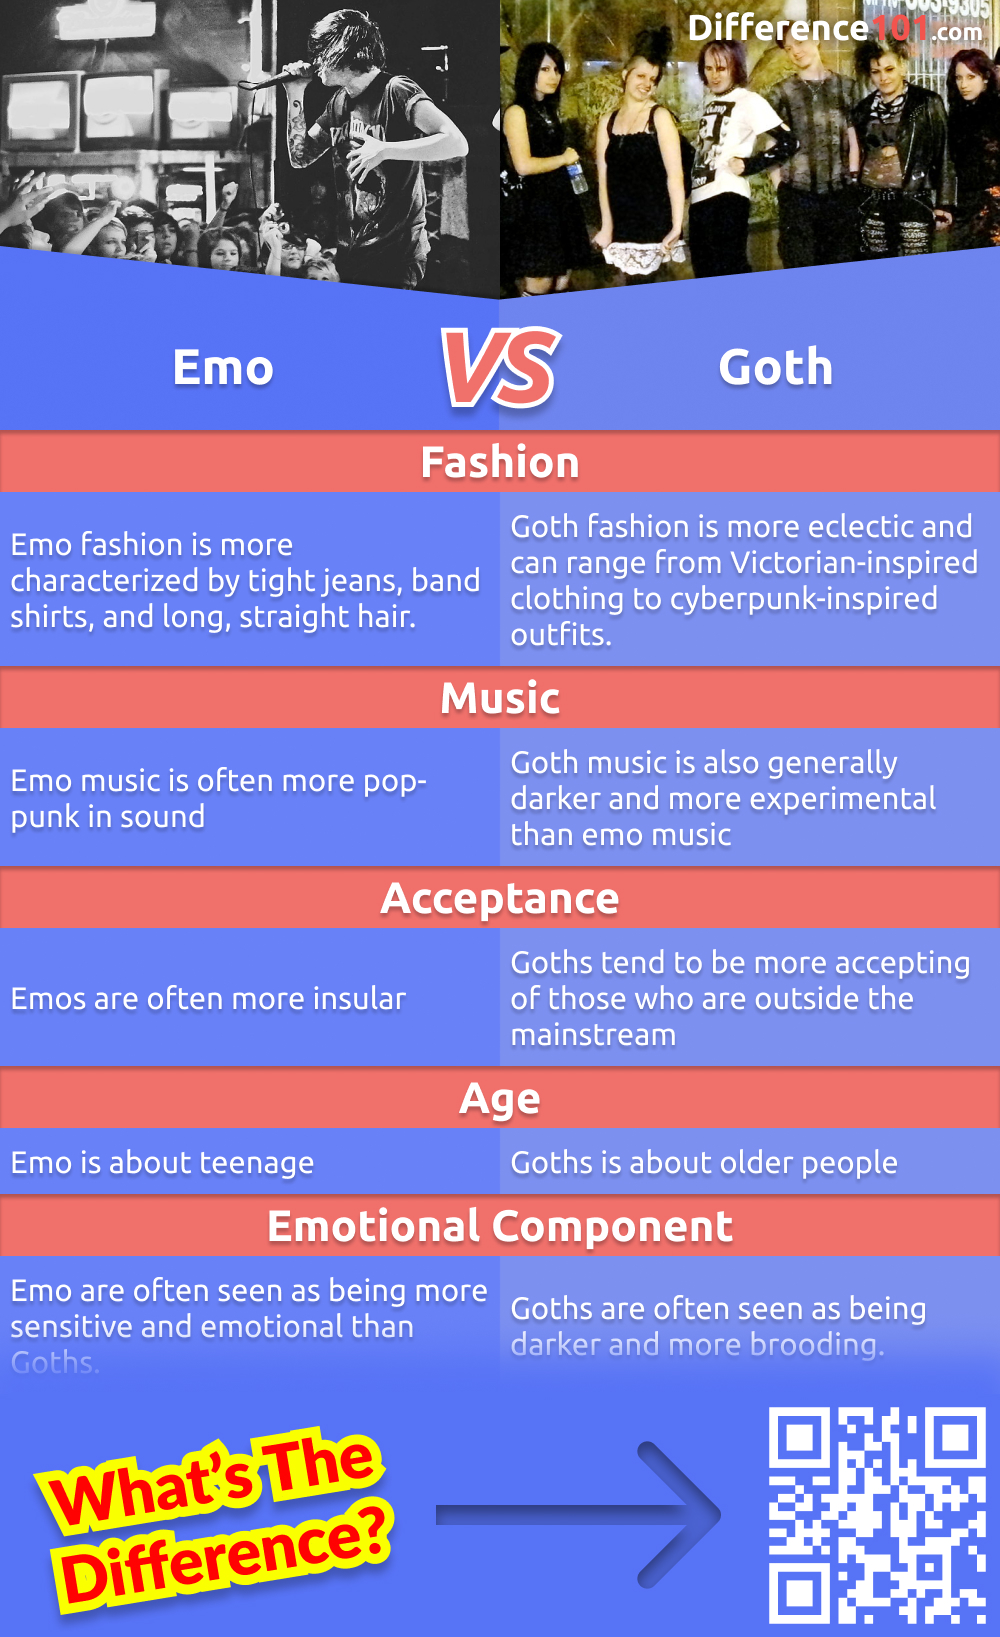 Emo e Gótico são duas subculturas populares que muitas vezes são agrupadas. Mas quais são as diferenças entre as duas? Este artigo explorará os prós e os contras de cada subcultura e suas principais diferenças.